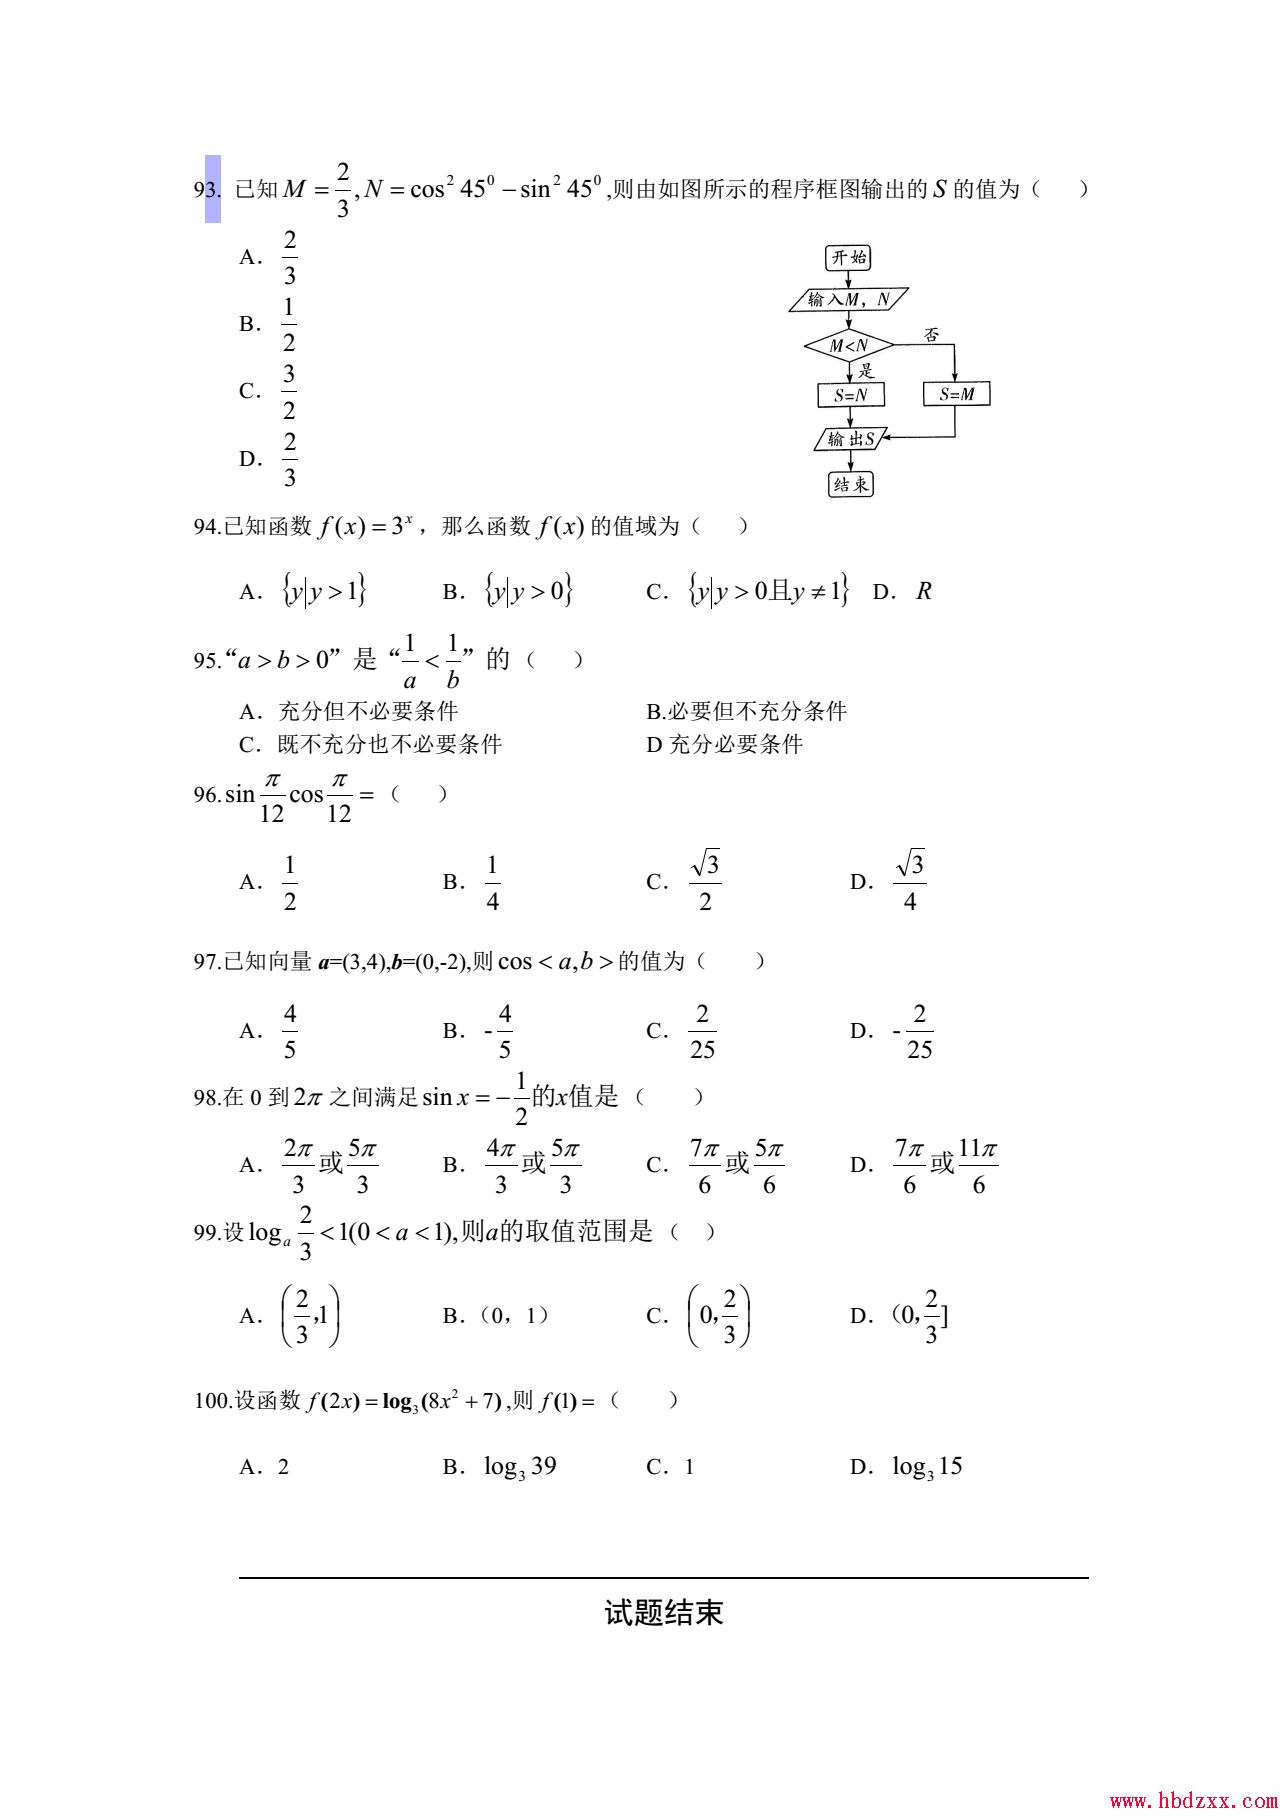 河北App职业技术学院2013年数学单招试题 图2